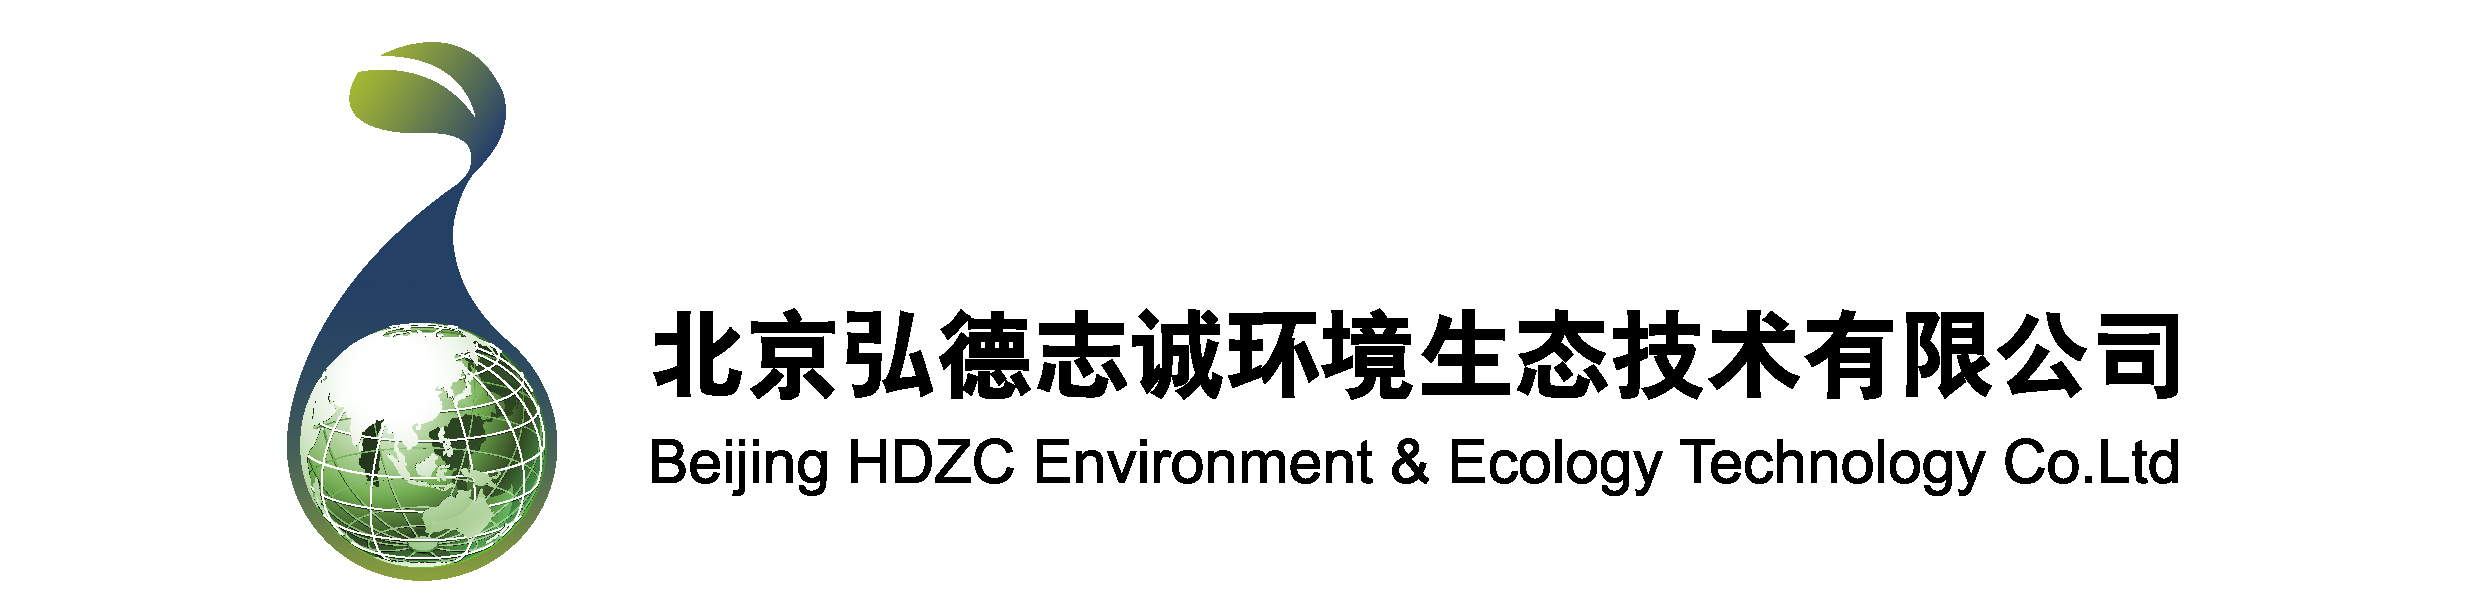 北京弘德志诚环境生态技术有限公司